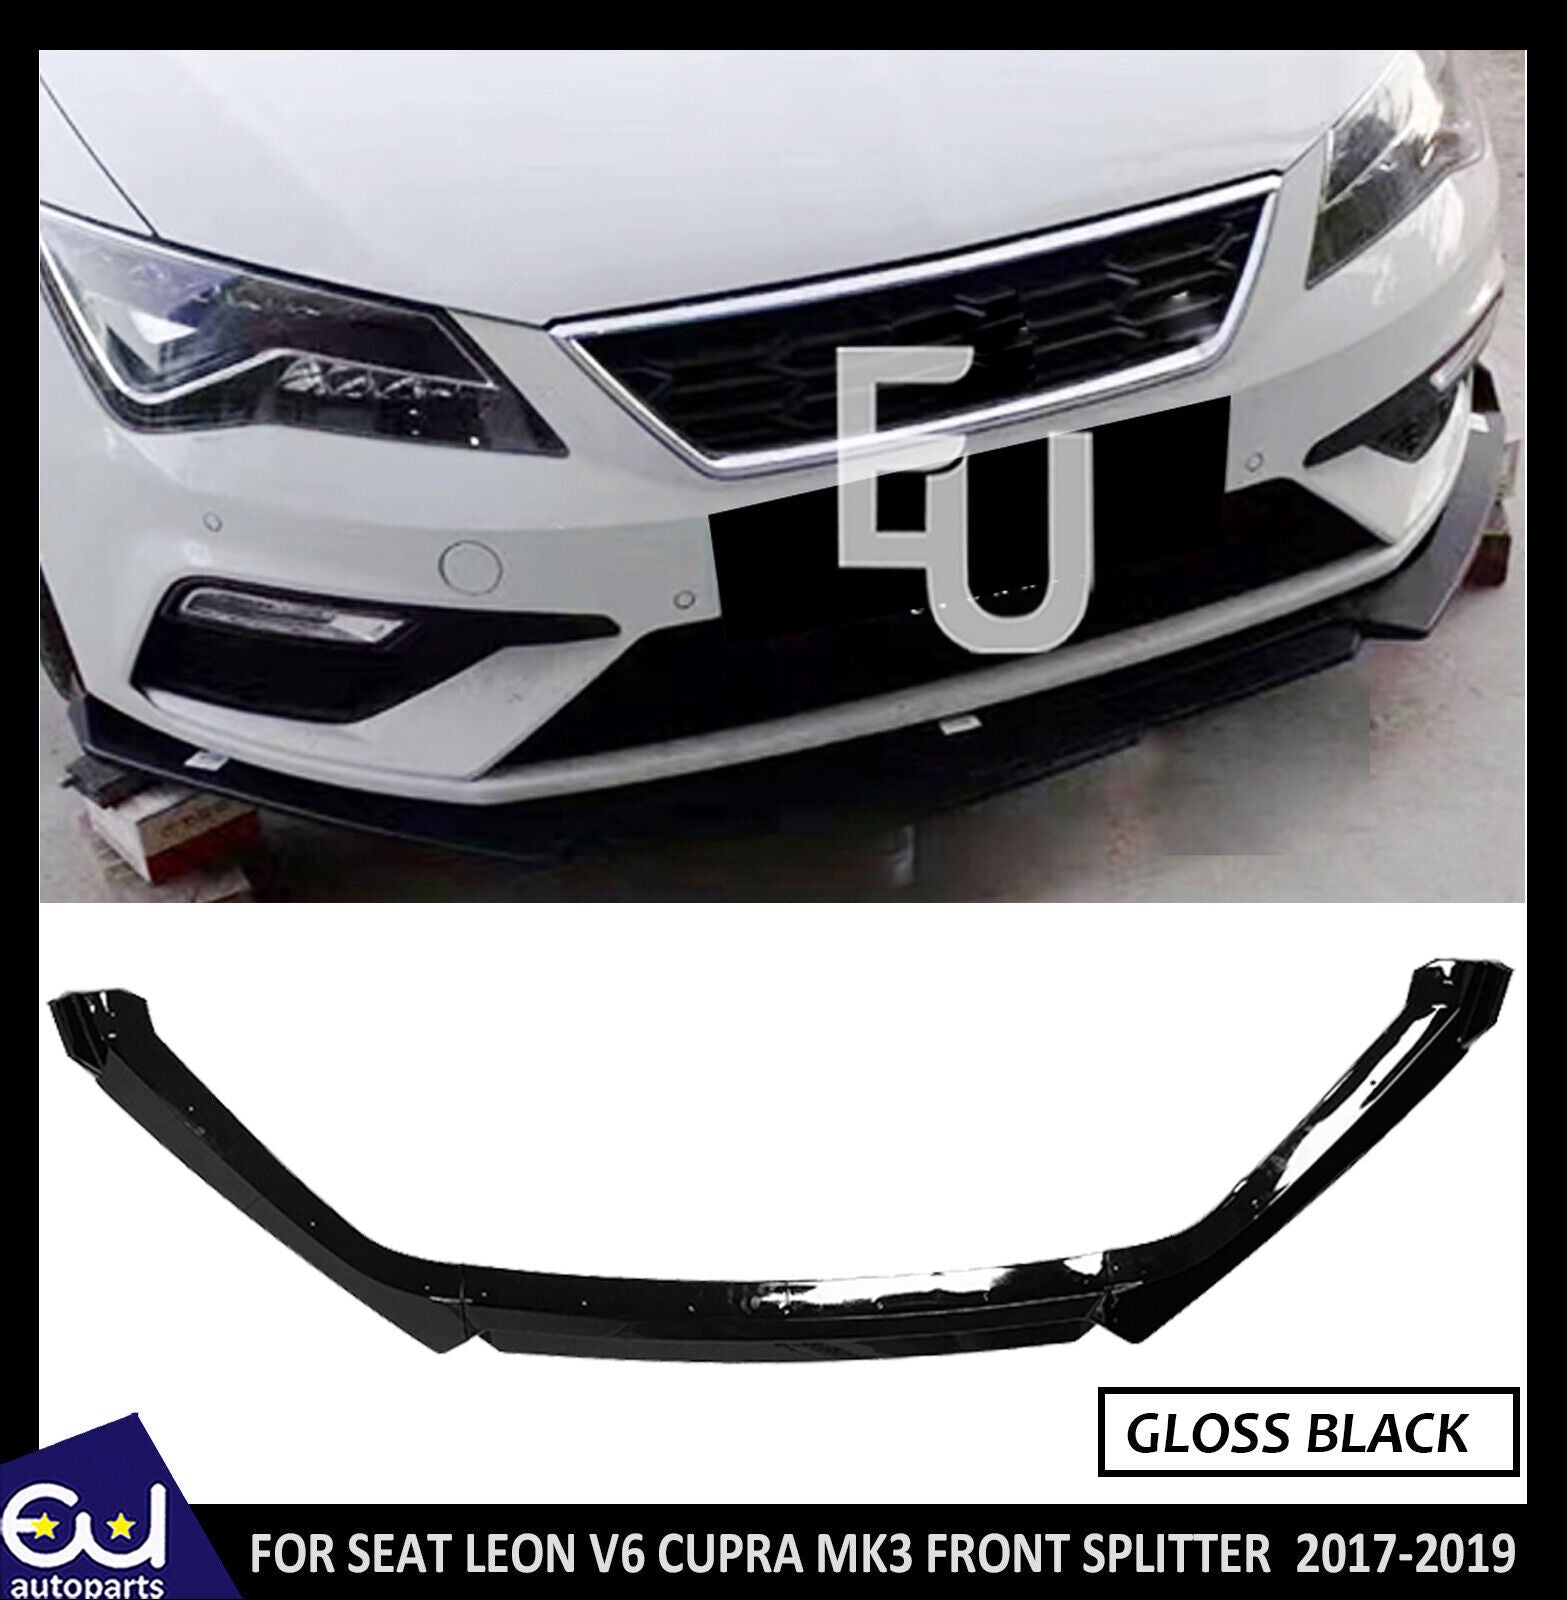 FOR SEAT LEON V6 CUPRA MK3 FRONT SPLITTER LIP FACELIFT GLOSS BLACK 2017-2019